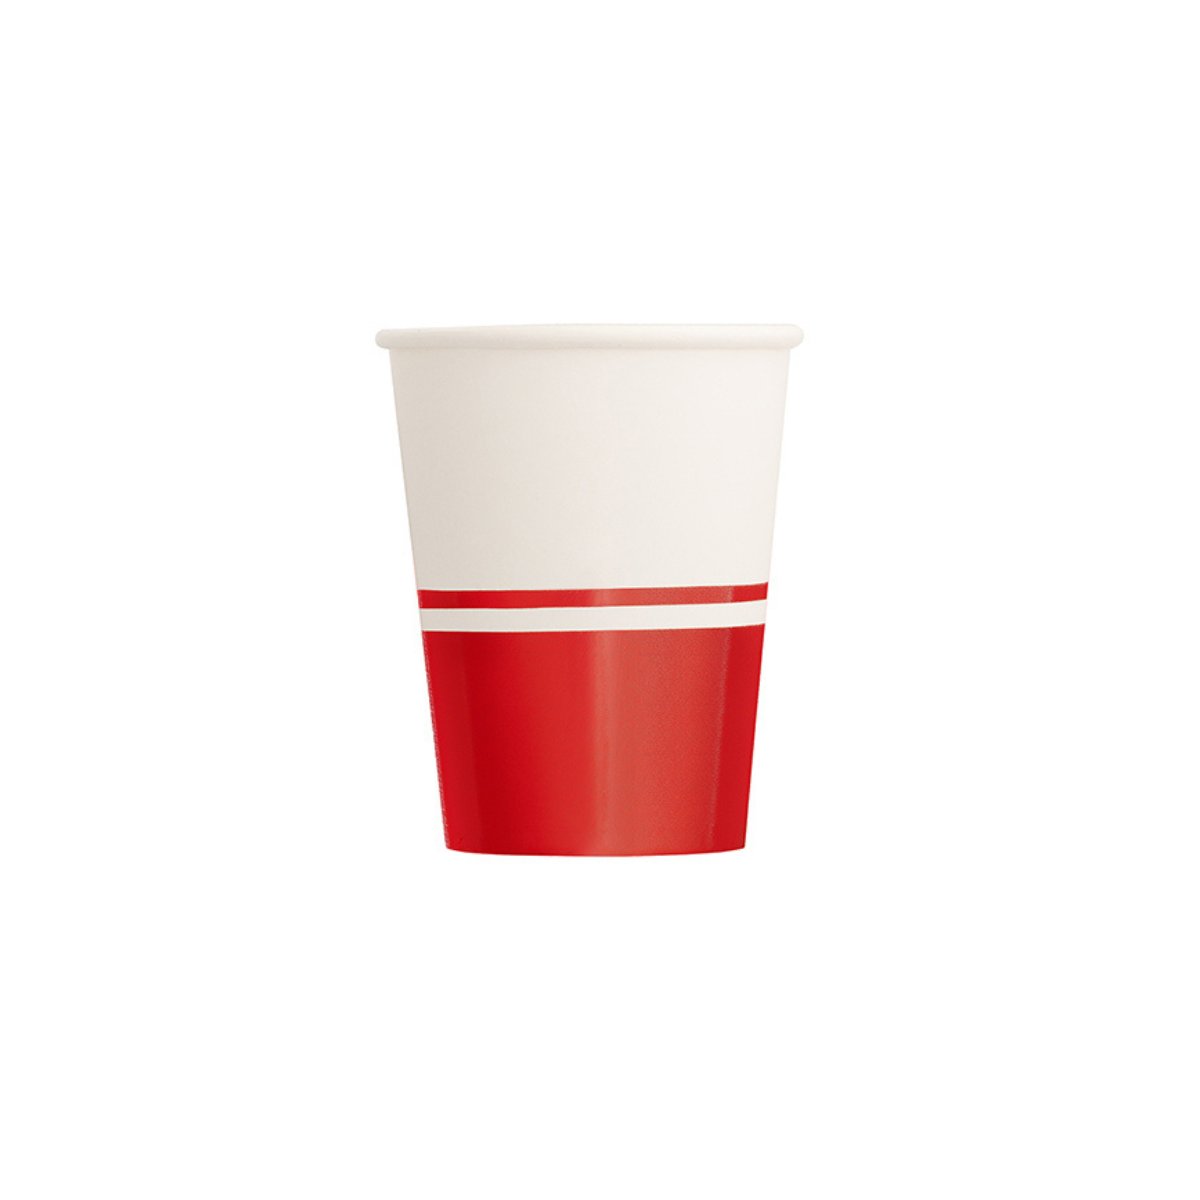 8pz Bicchiere in cartoncino bianco e rosso € 3,80 + Iva